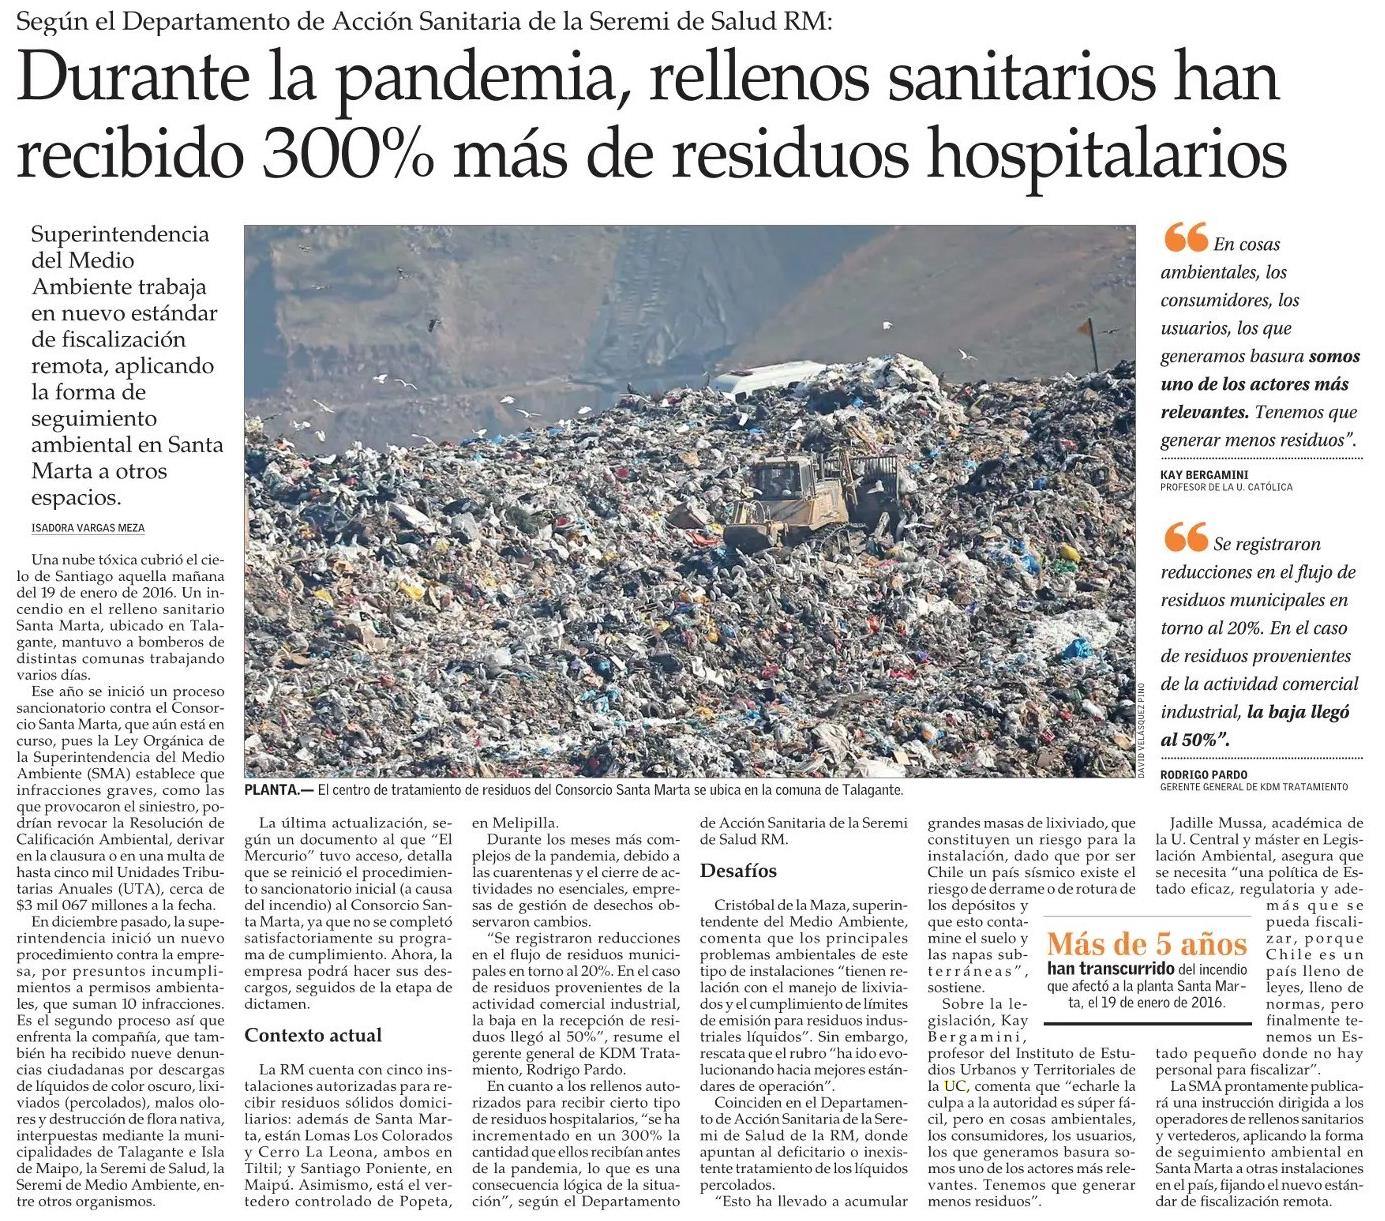 El Mercurio: Durante la pandemia, rellenos sanitarios han recibido 300% más de residuos hospitalarios